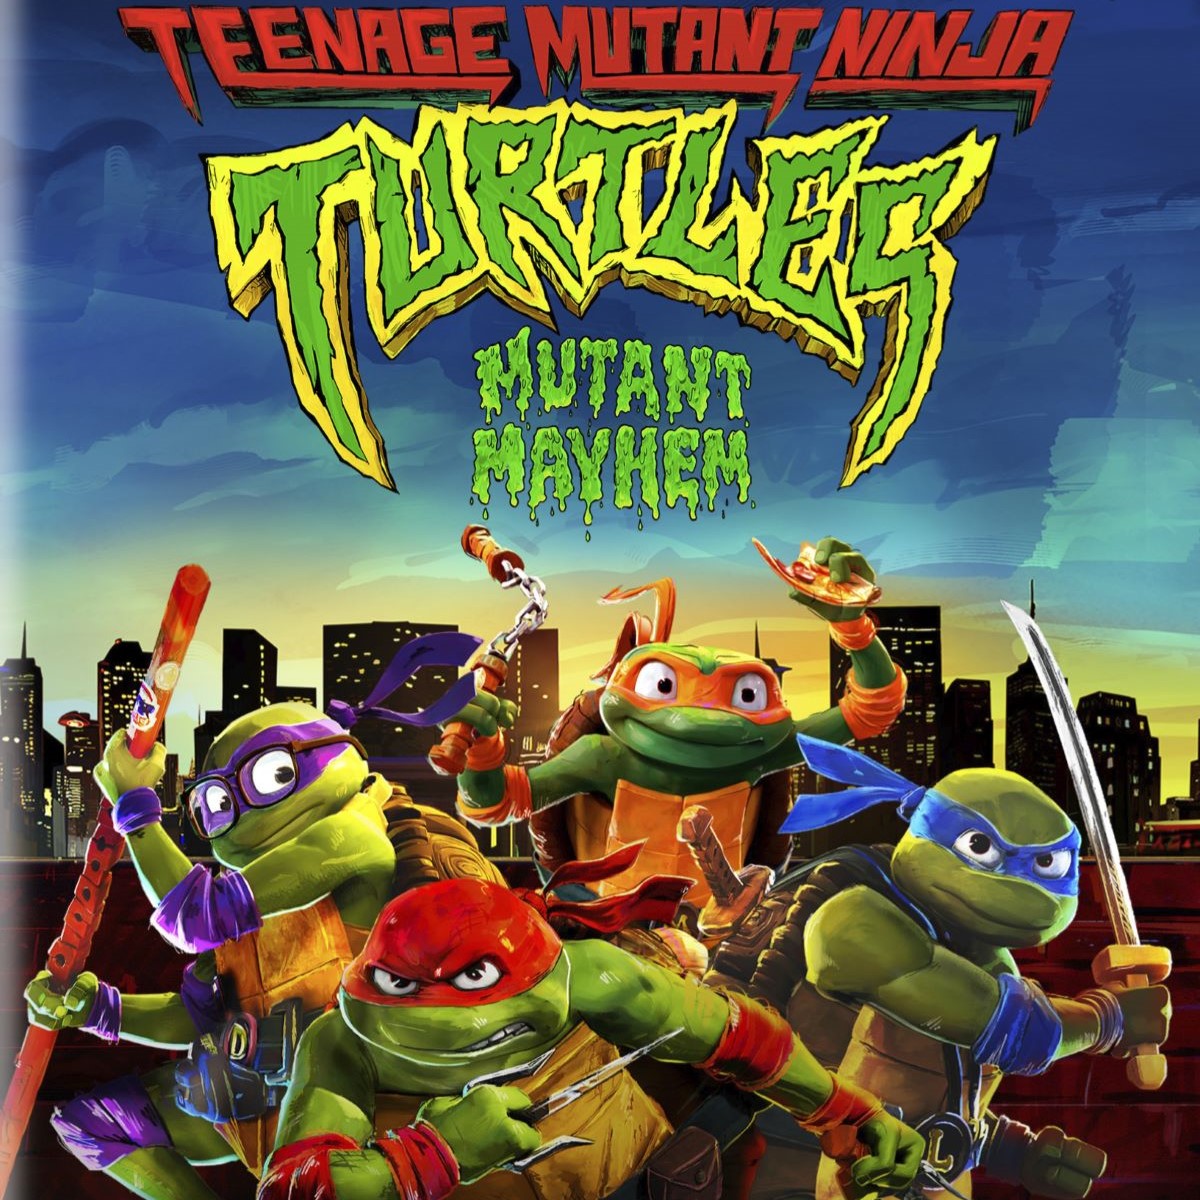 Teenage Mutant Ninja Turtles: Mutant Mayhem (4K UHD Digital Movie) $10 & More